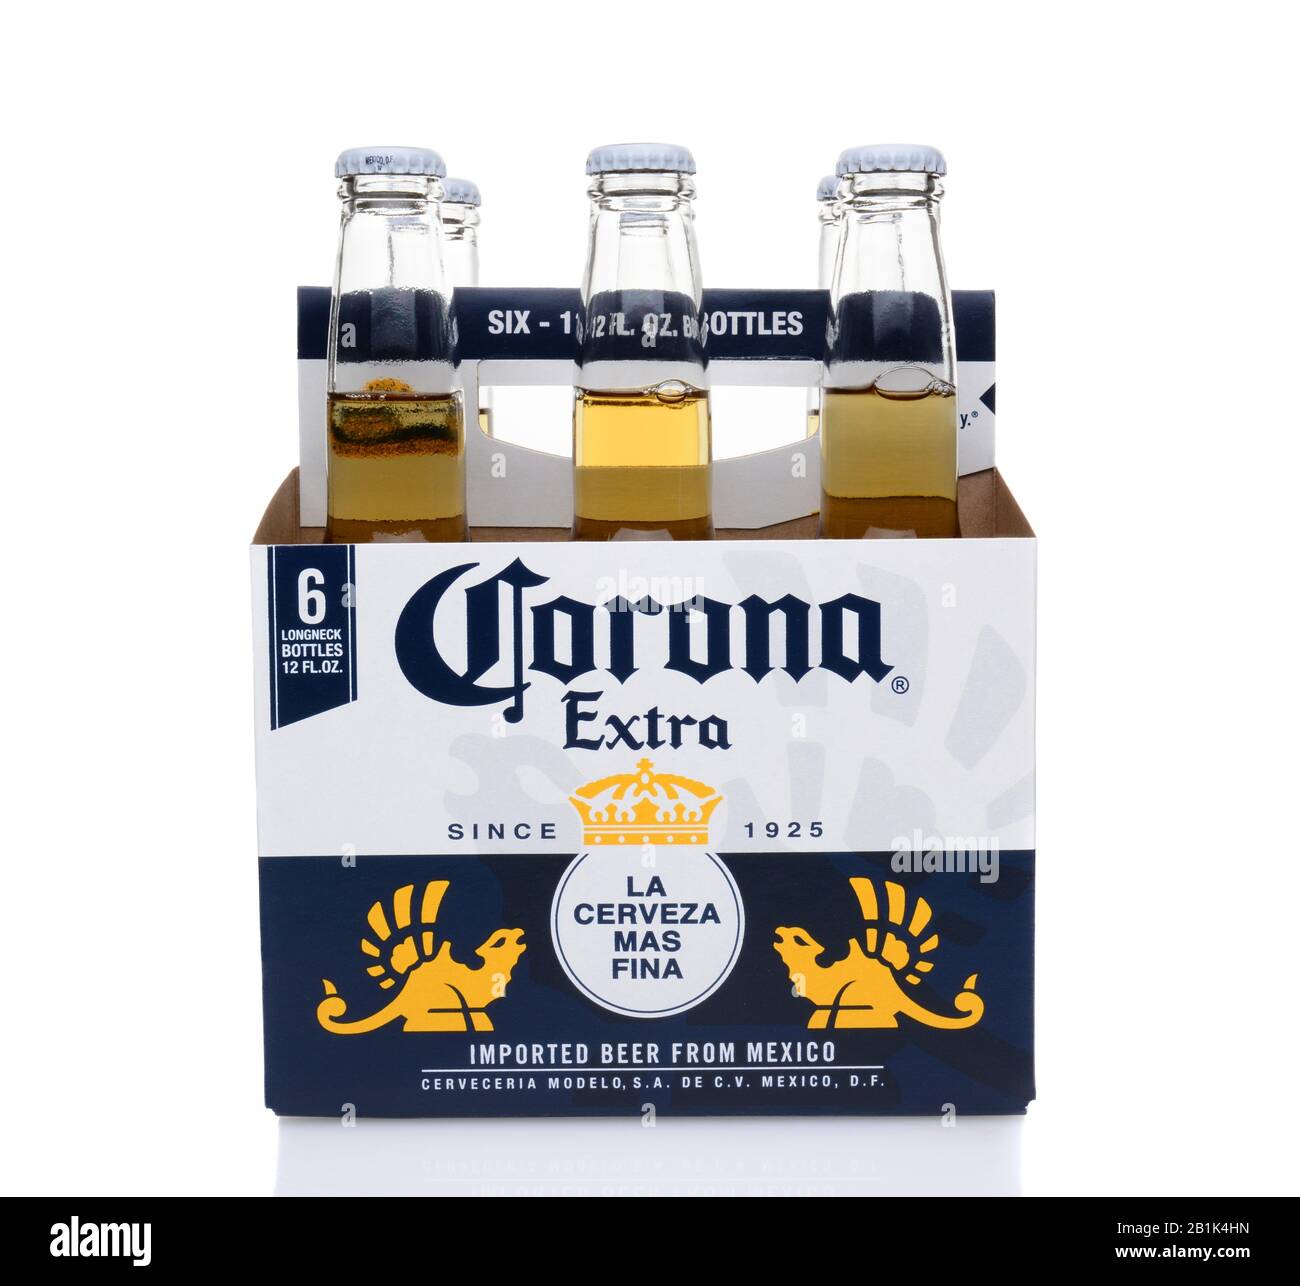 Irvine, CA - 25. MAI 2014: Ein 6er Pack Corona Extra Bier, Seitenansicht. Corona ist das beliebteste Importbier in den Vereinigten Staaten. Stockfoto